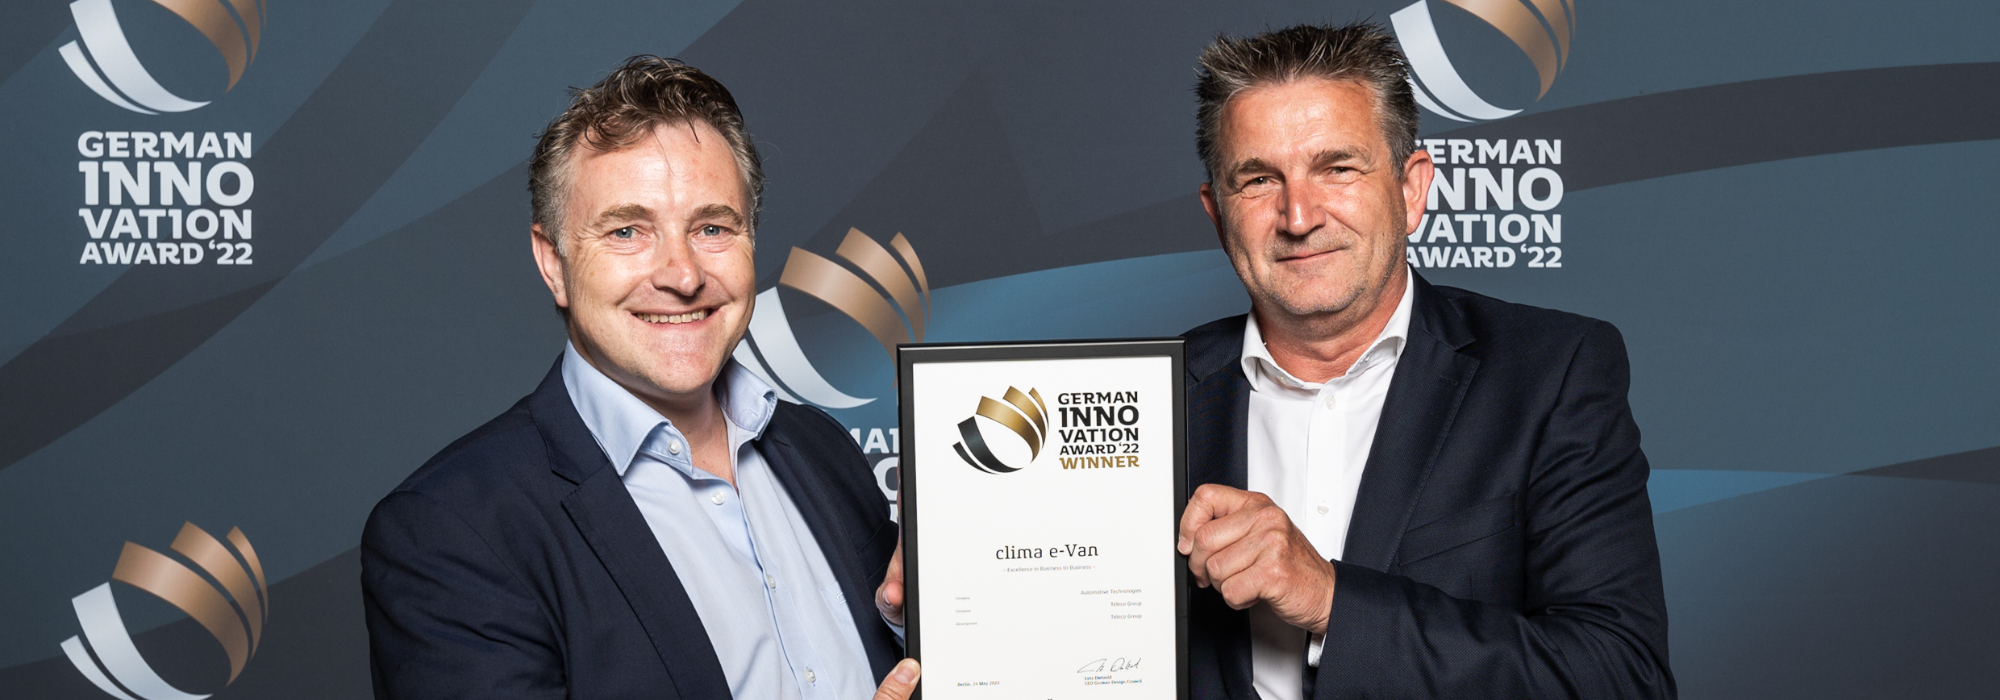 Teleco wint de Duitse Innovatieprijs